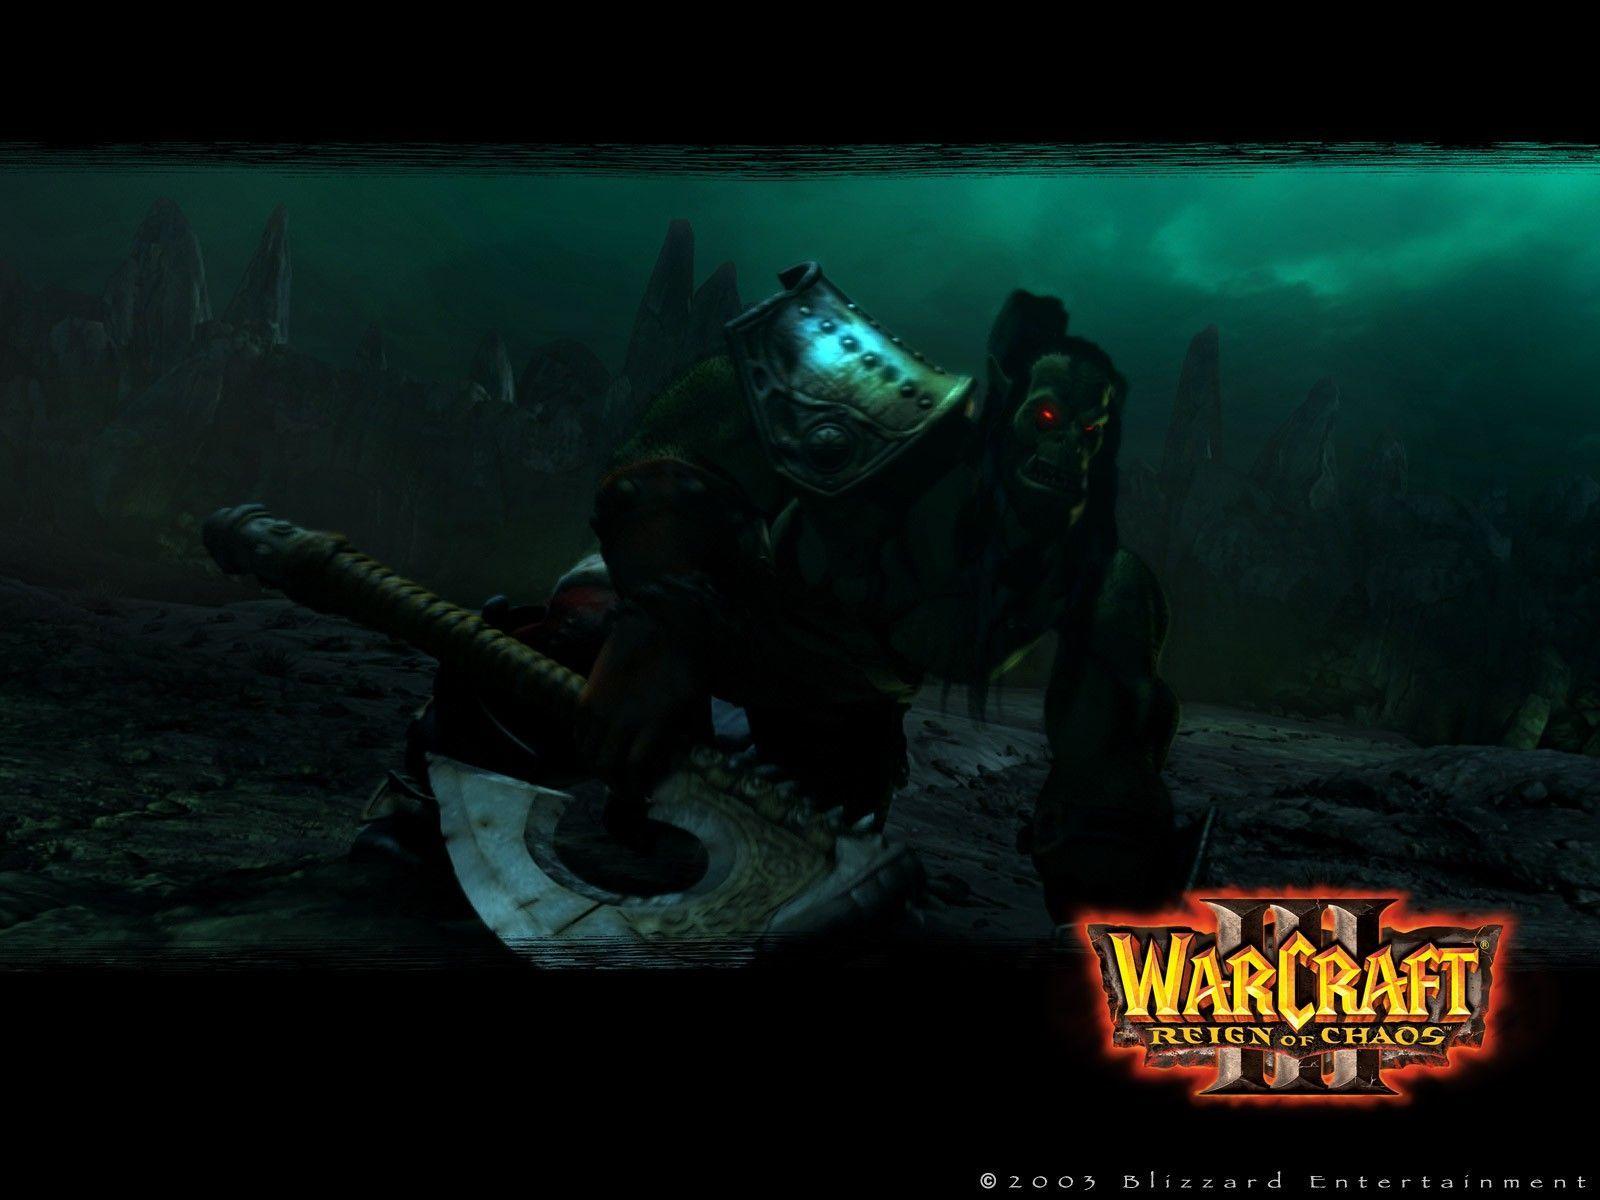 Warcraft wallpaper. Warcraft